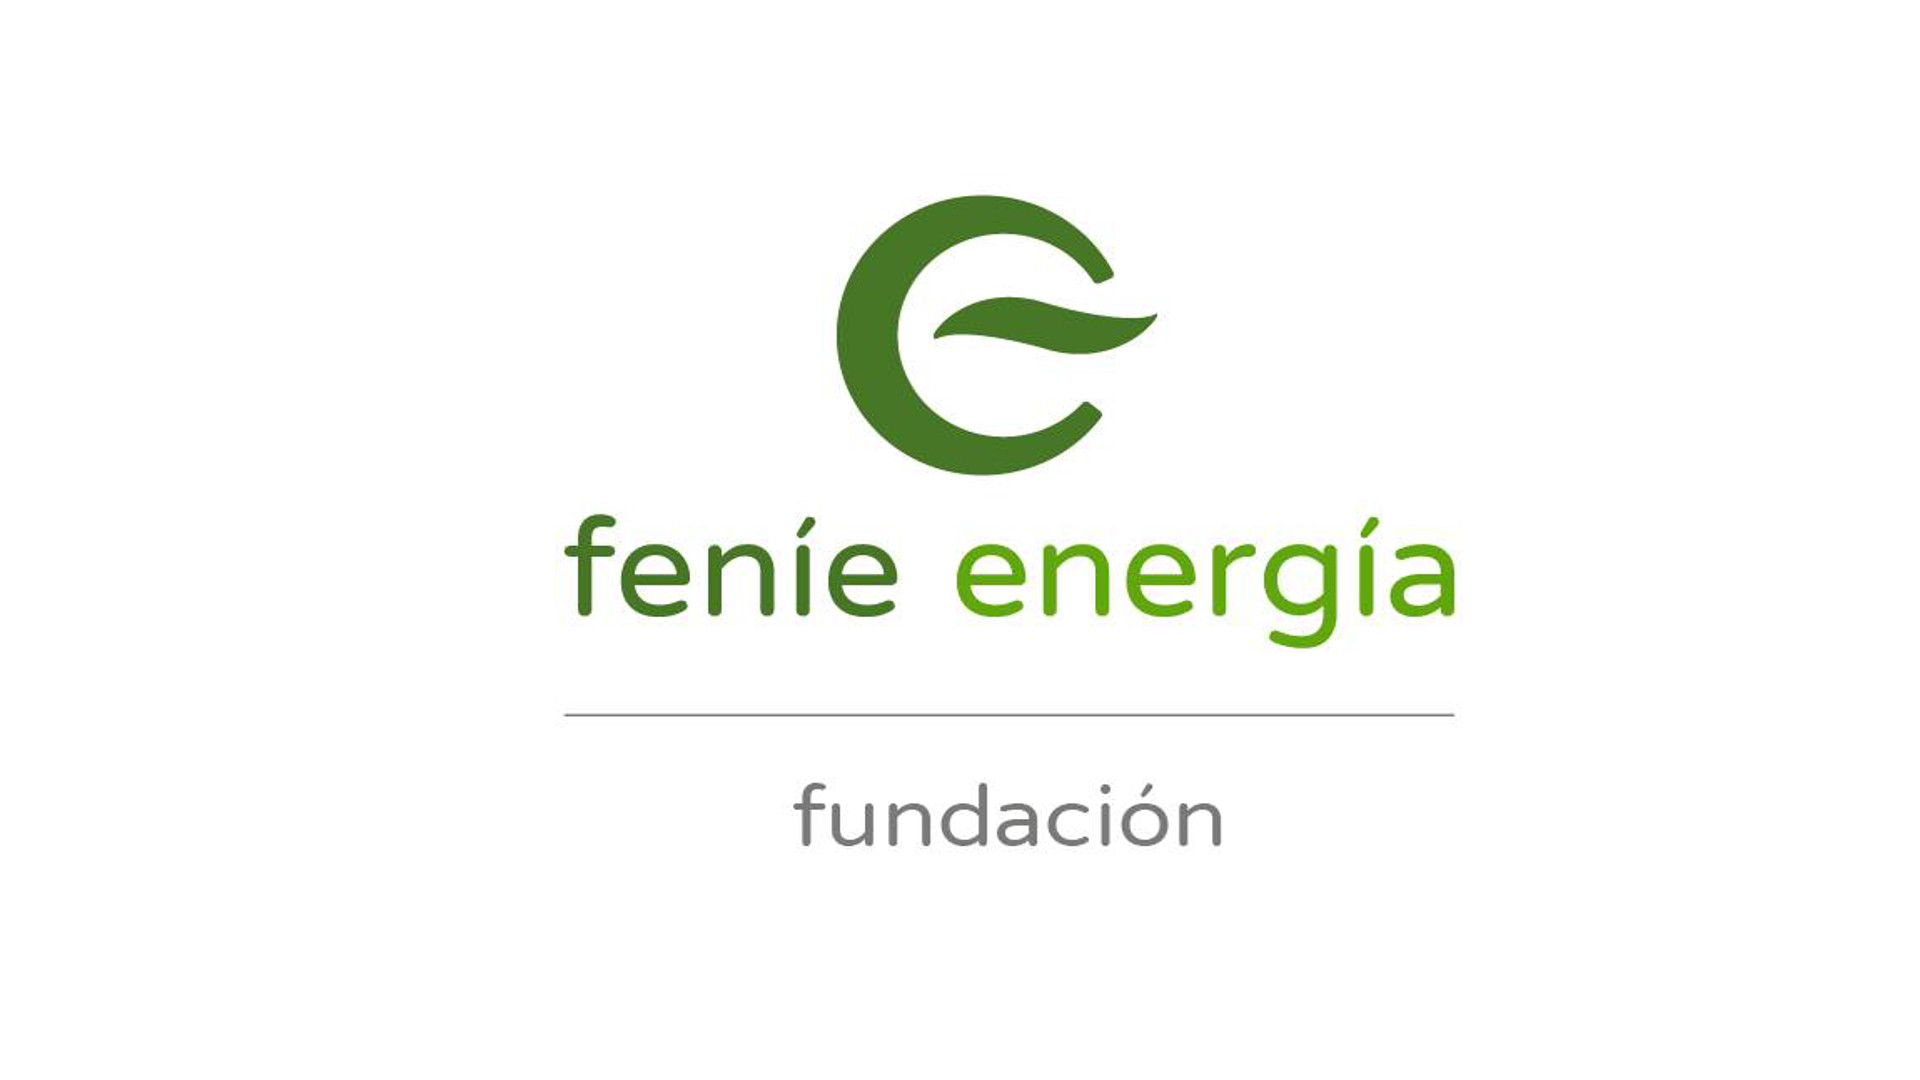 fundacion-fenie-energia-nace-para-promover-la-eficiencia-energetica-1920